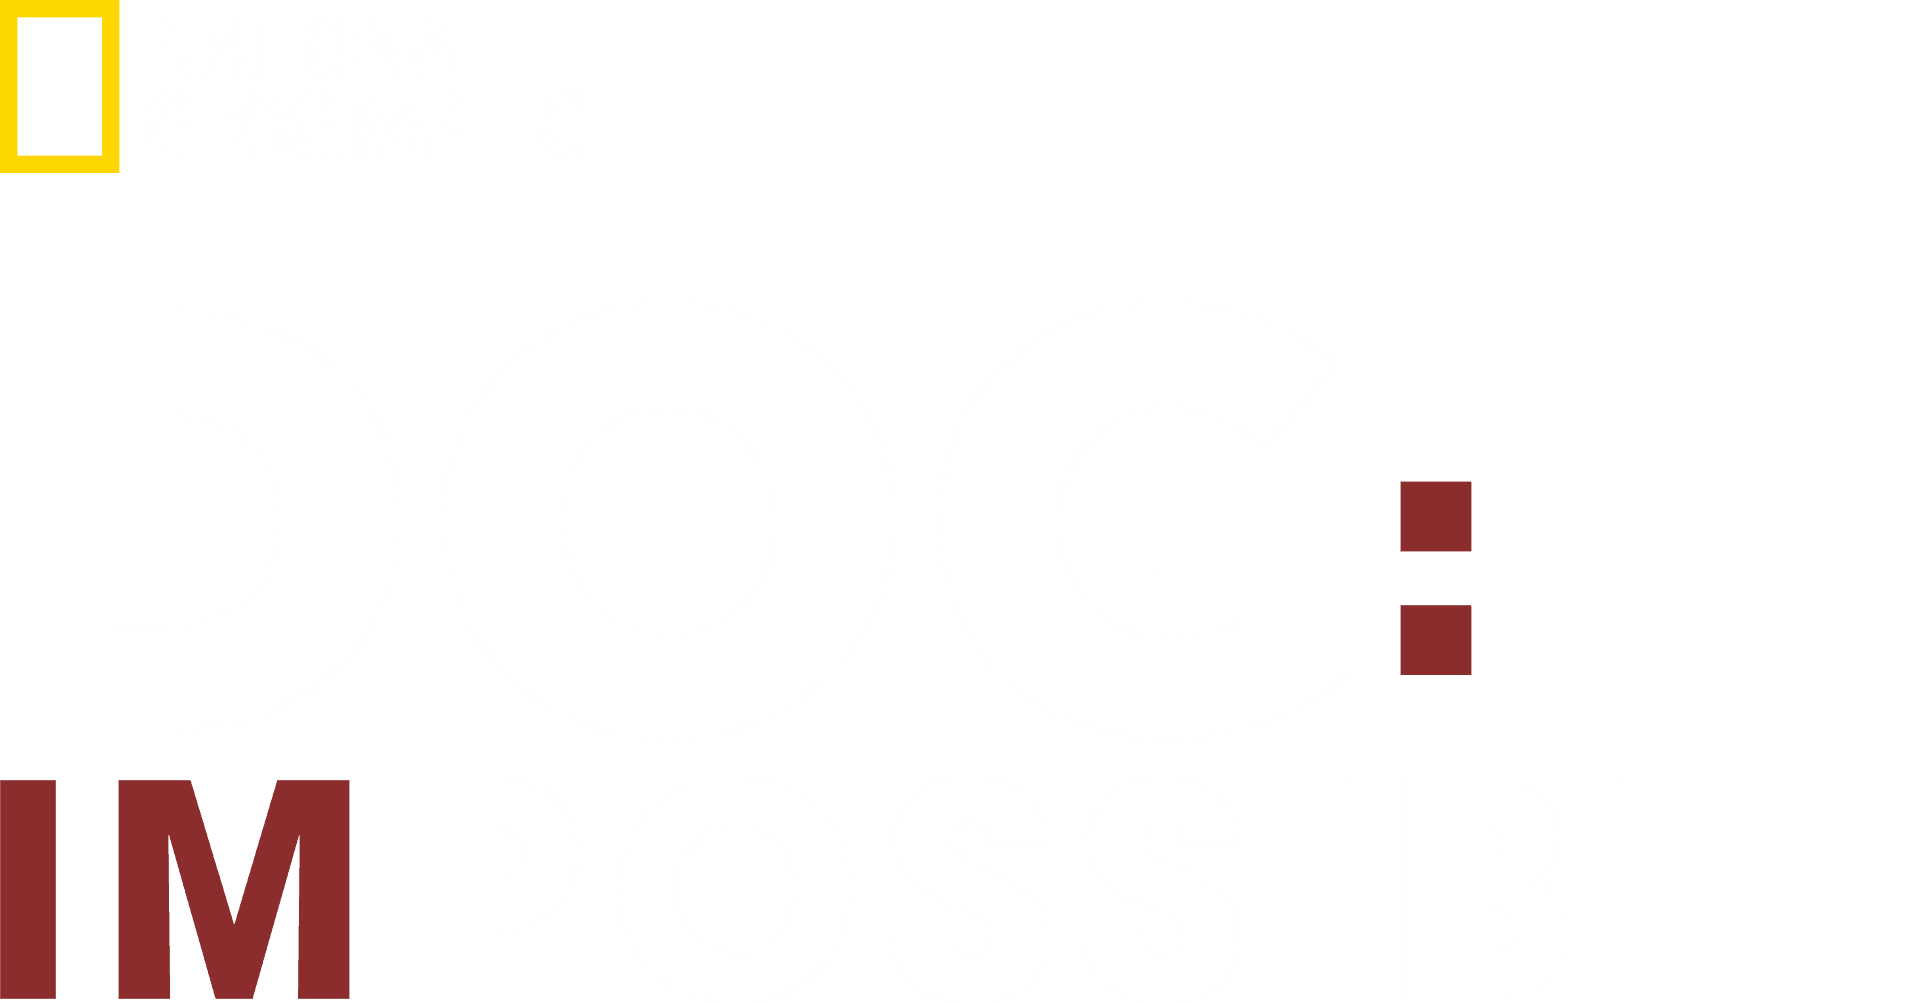 Dog: Impossible logo